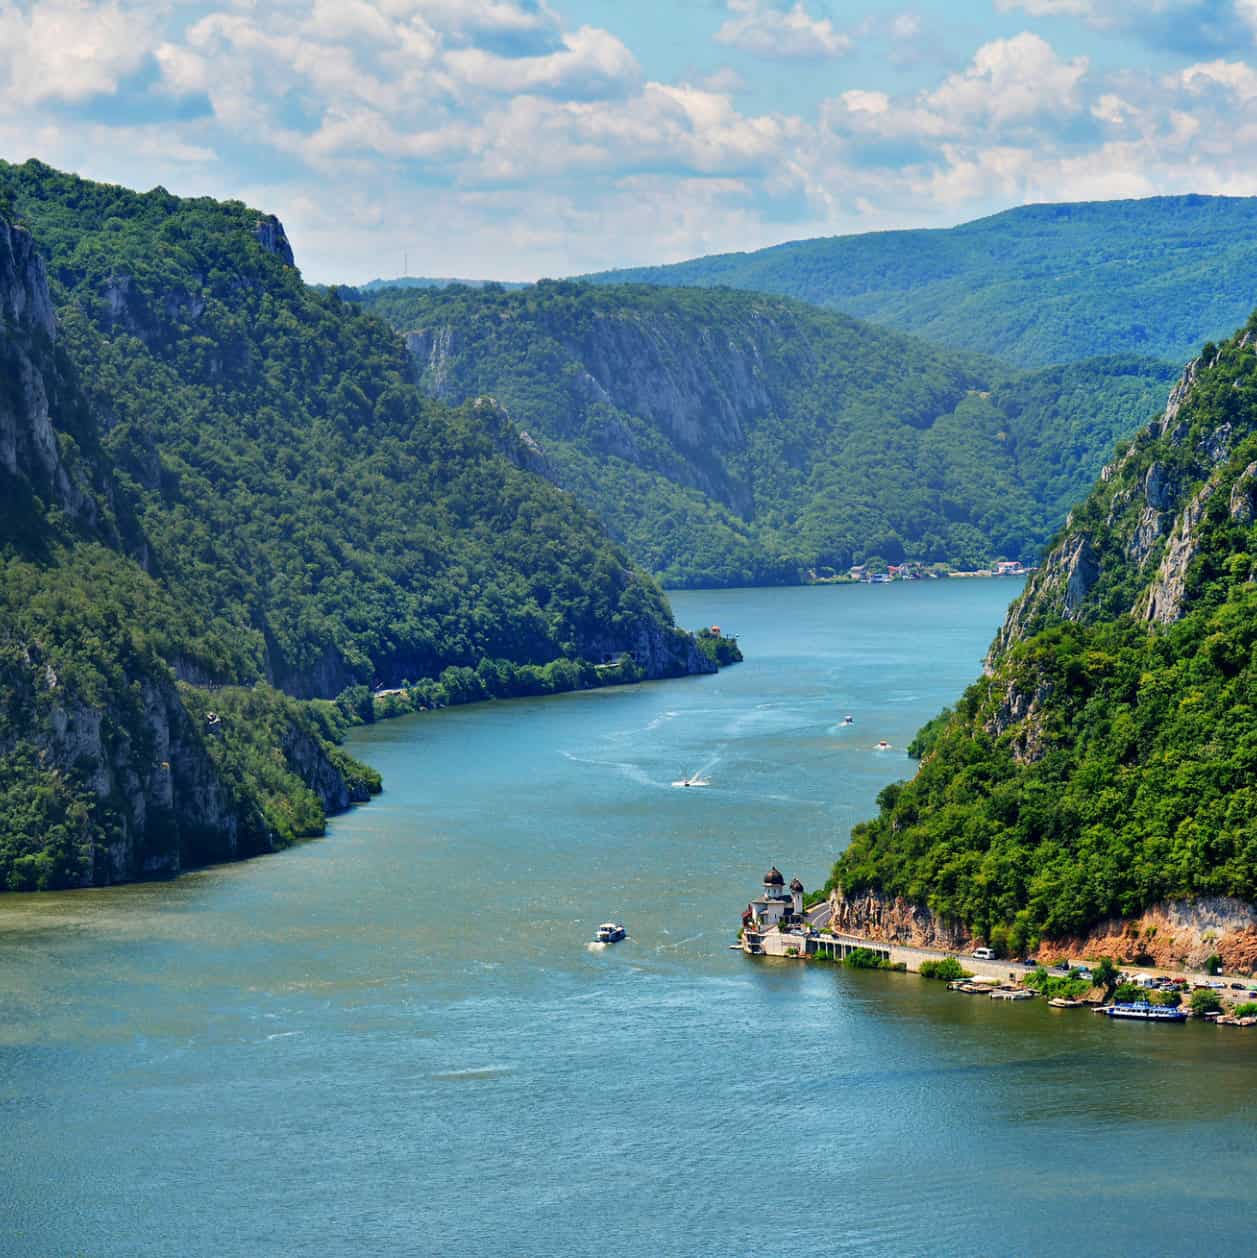 Beautiful shot of Danube River